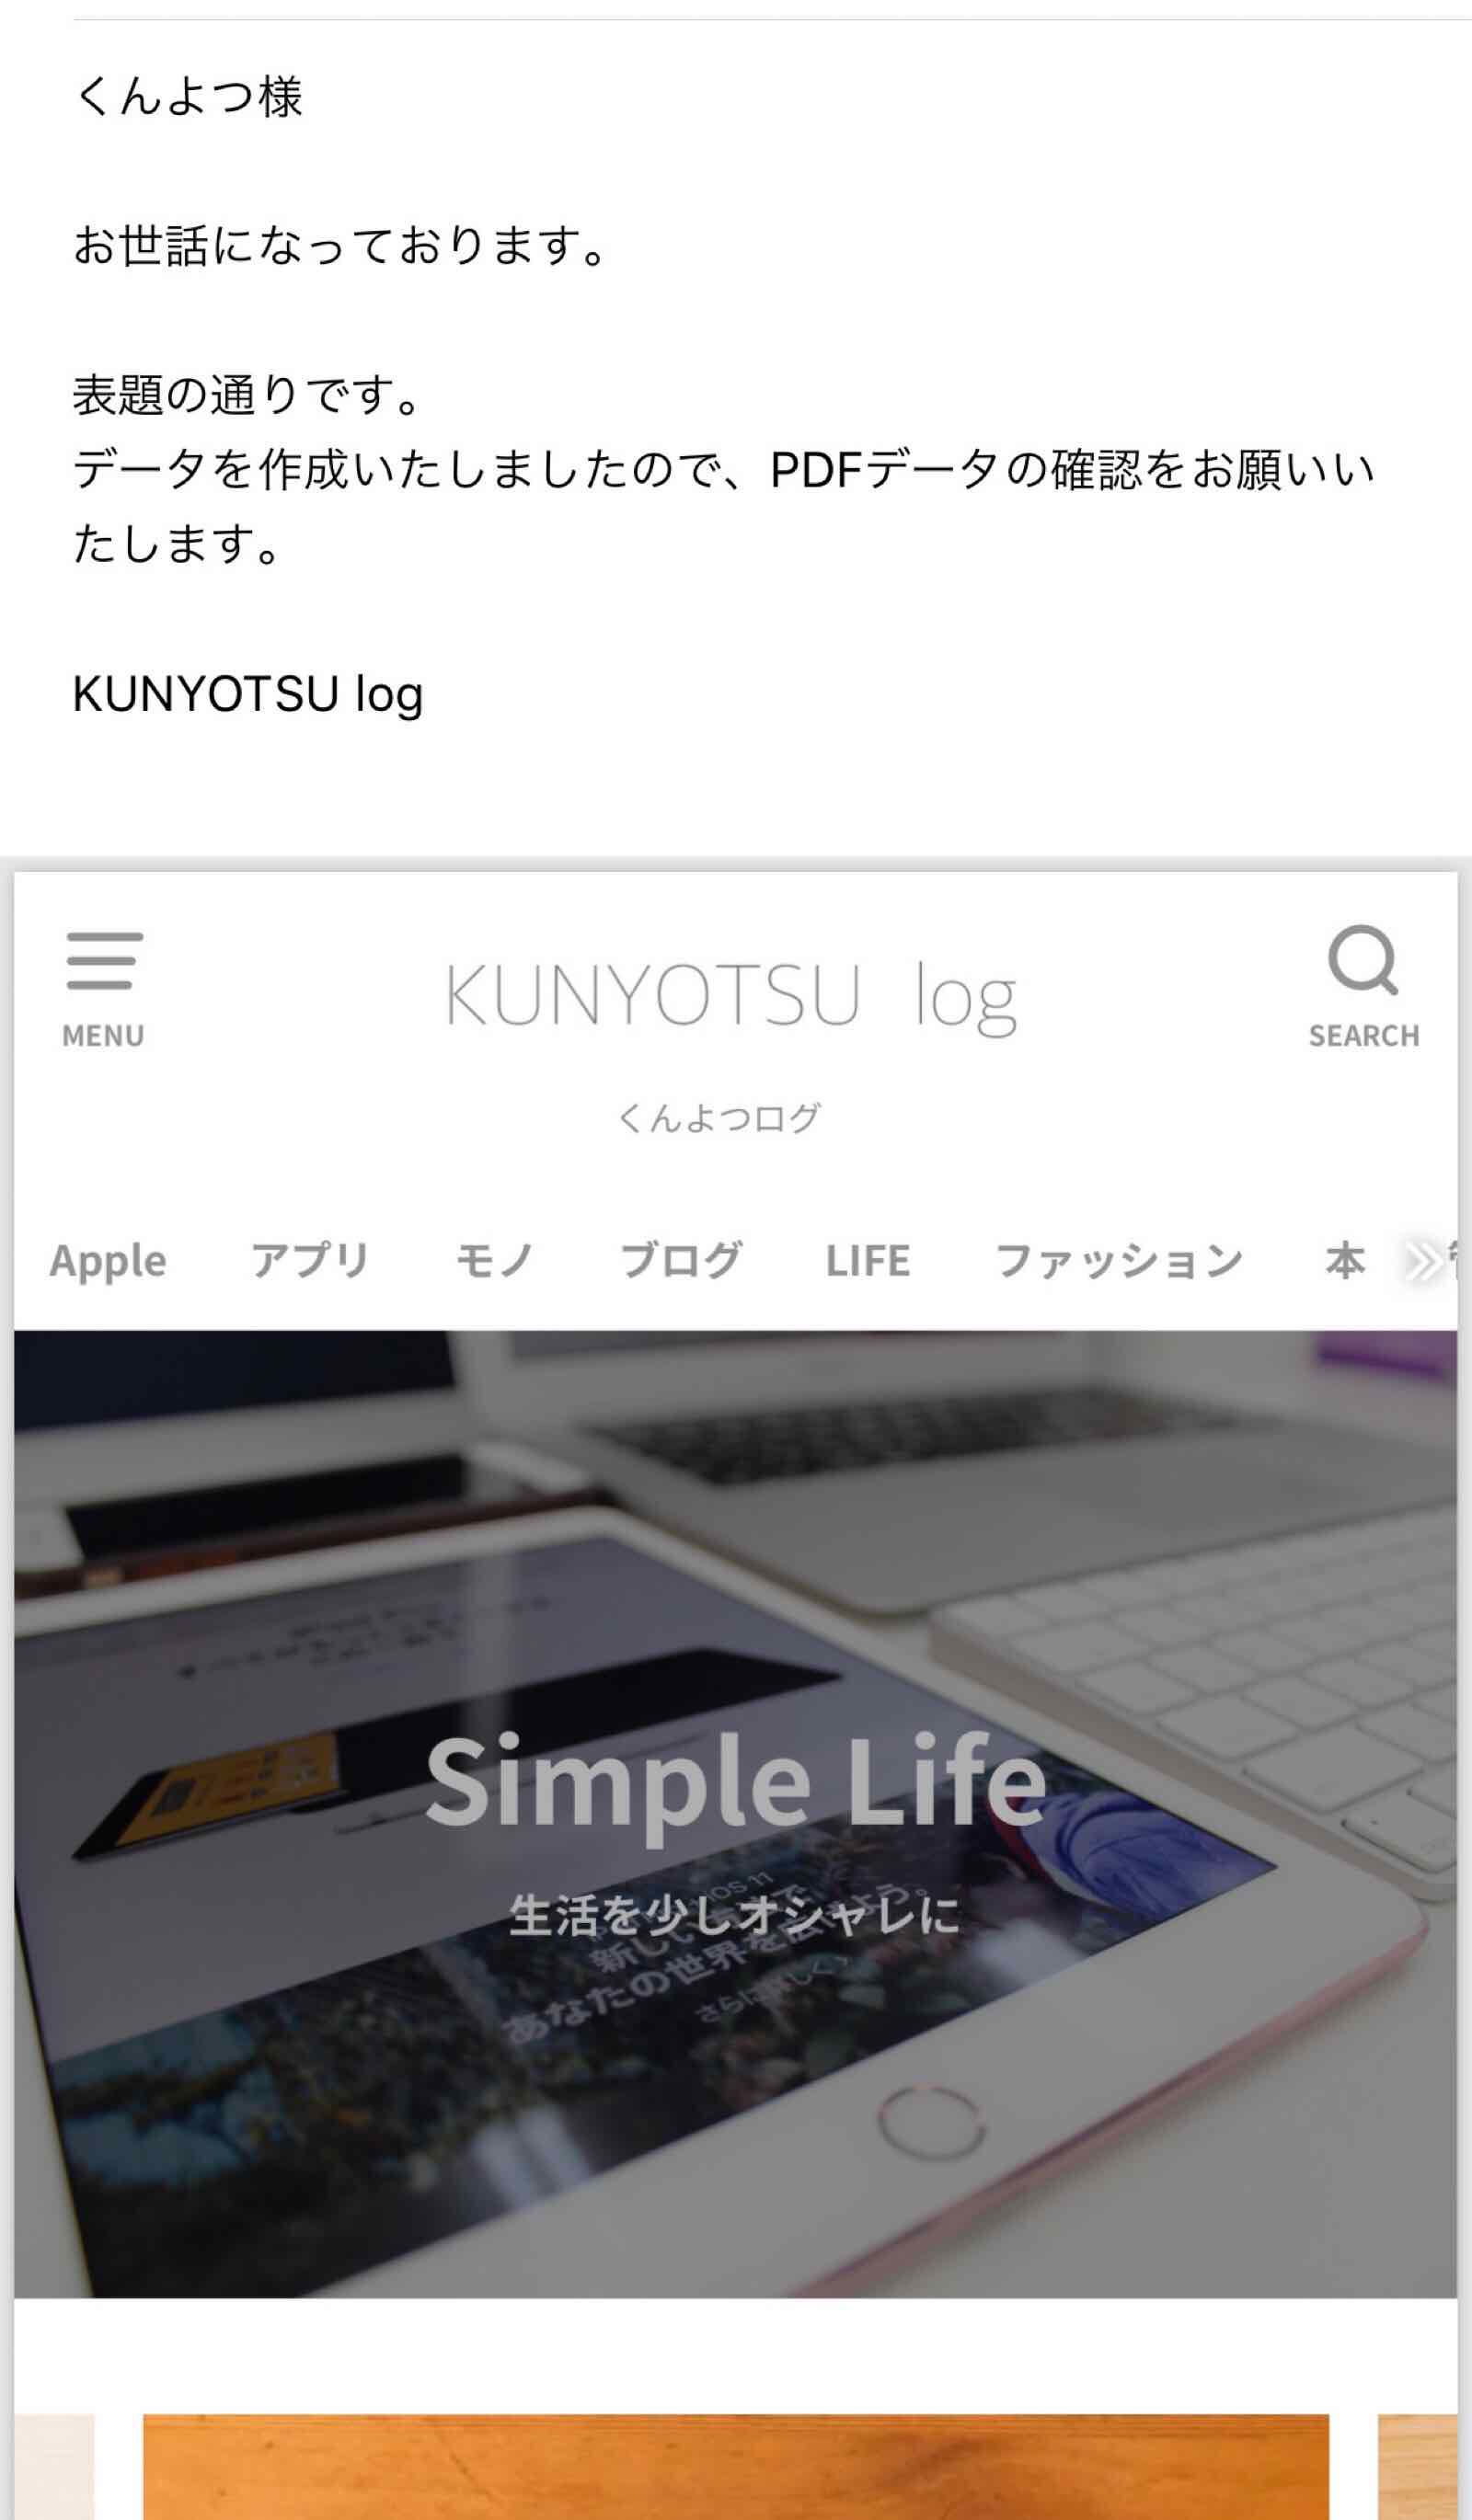 Iphoneでpdfを編集する方法 マークアップ Adobe Acrobat Reader Kunyotsu Log